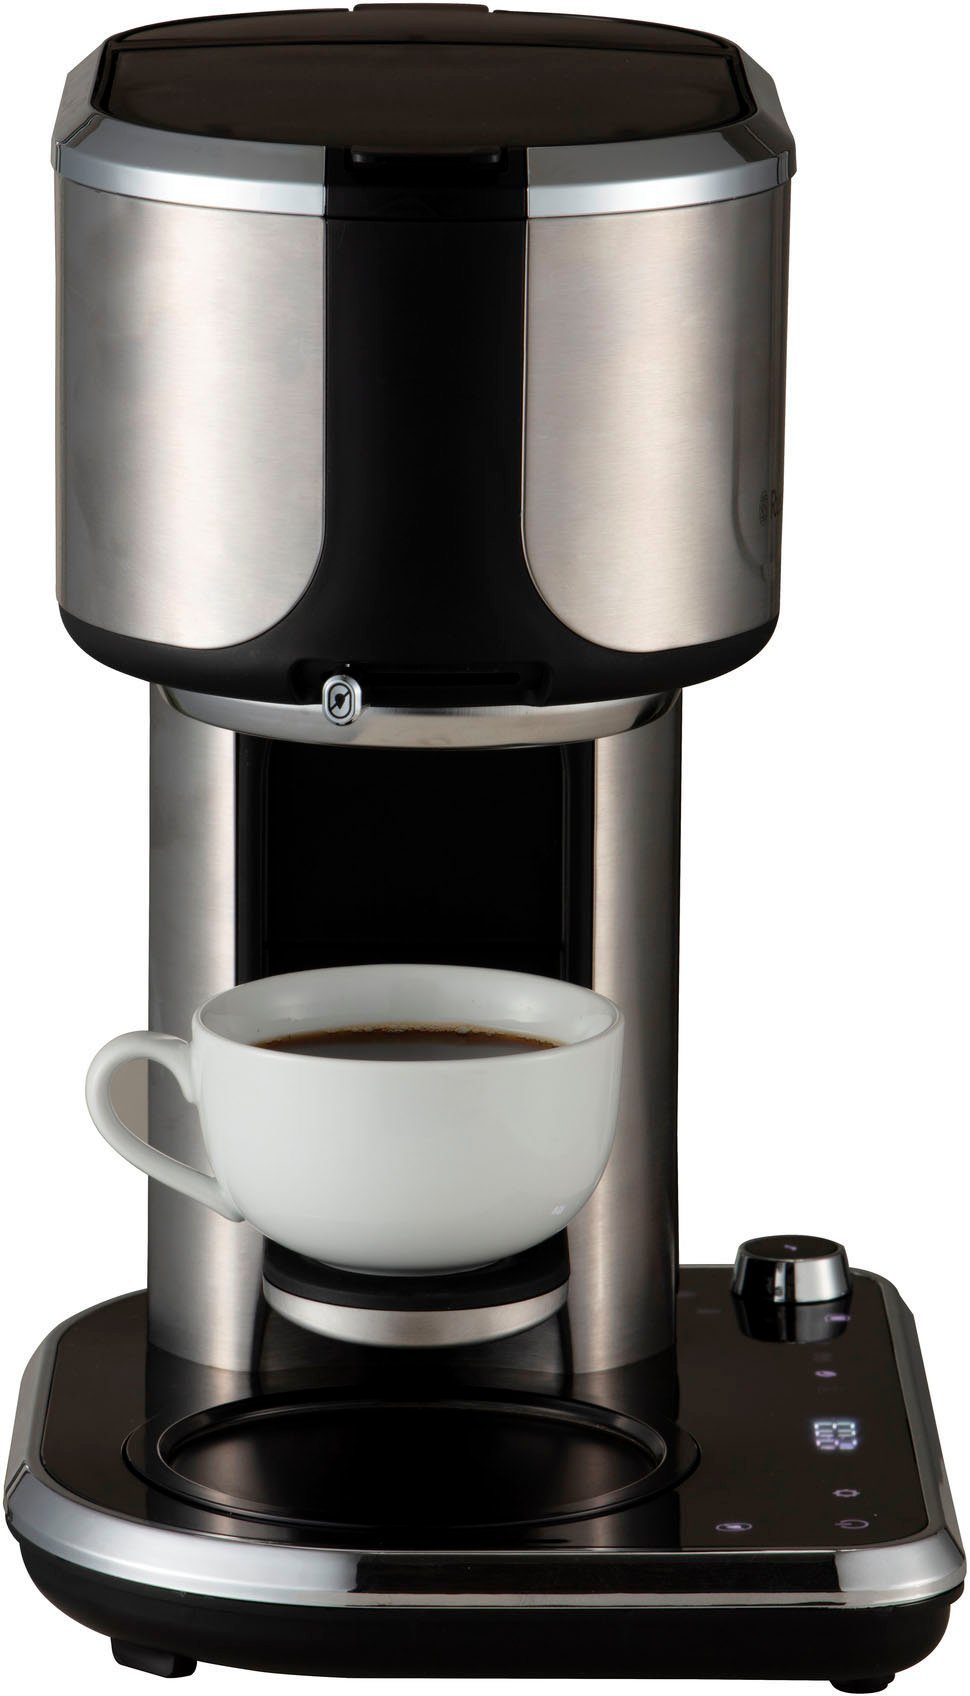 RUSSELL HOBBS Filterkaffeemaschine Papierfilter Attentiv Bar, 26230-56 1x4 1,25l Kaffeekanne, Coffee